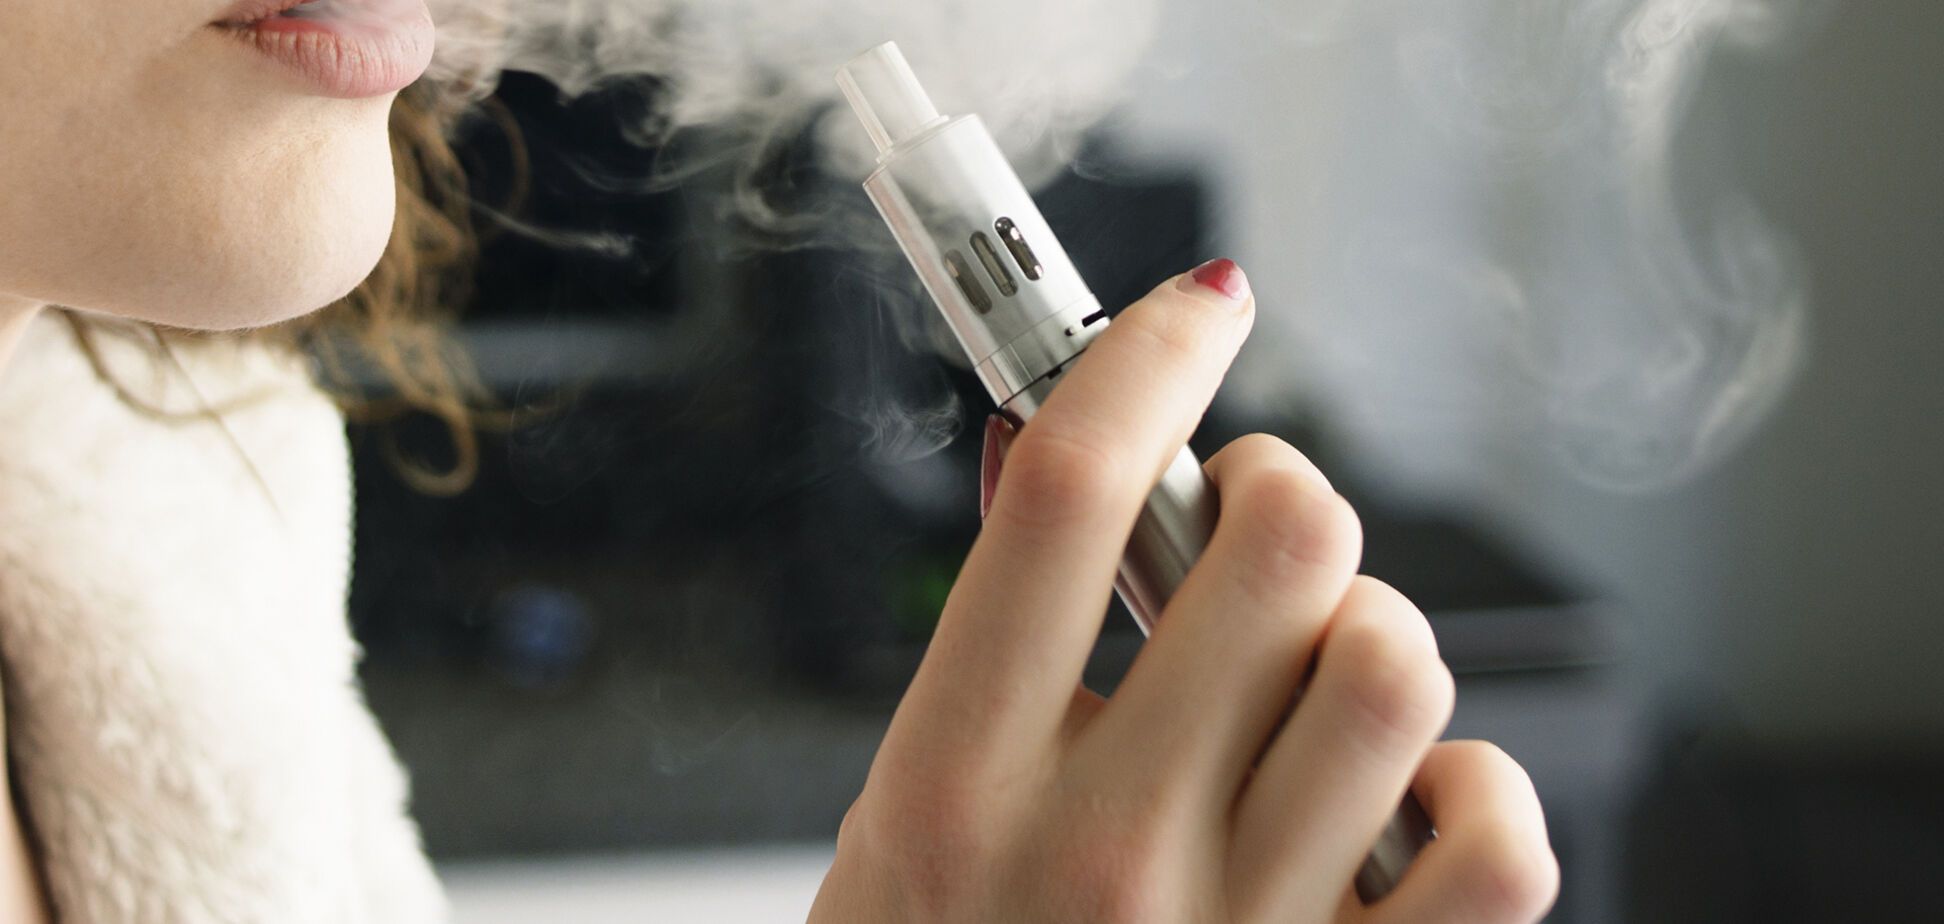 Снижает шансы: ученые развенчали главный миф об электронных сигаретах